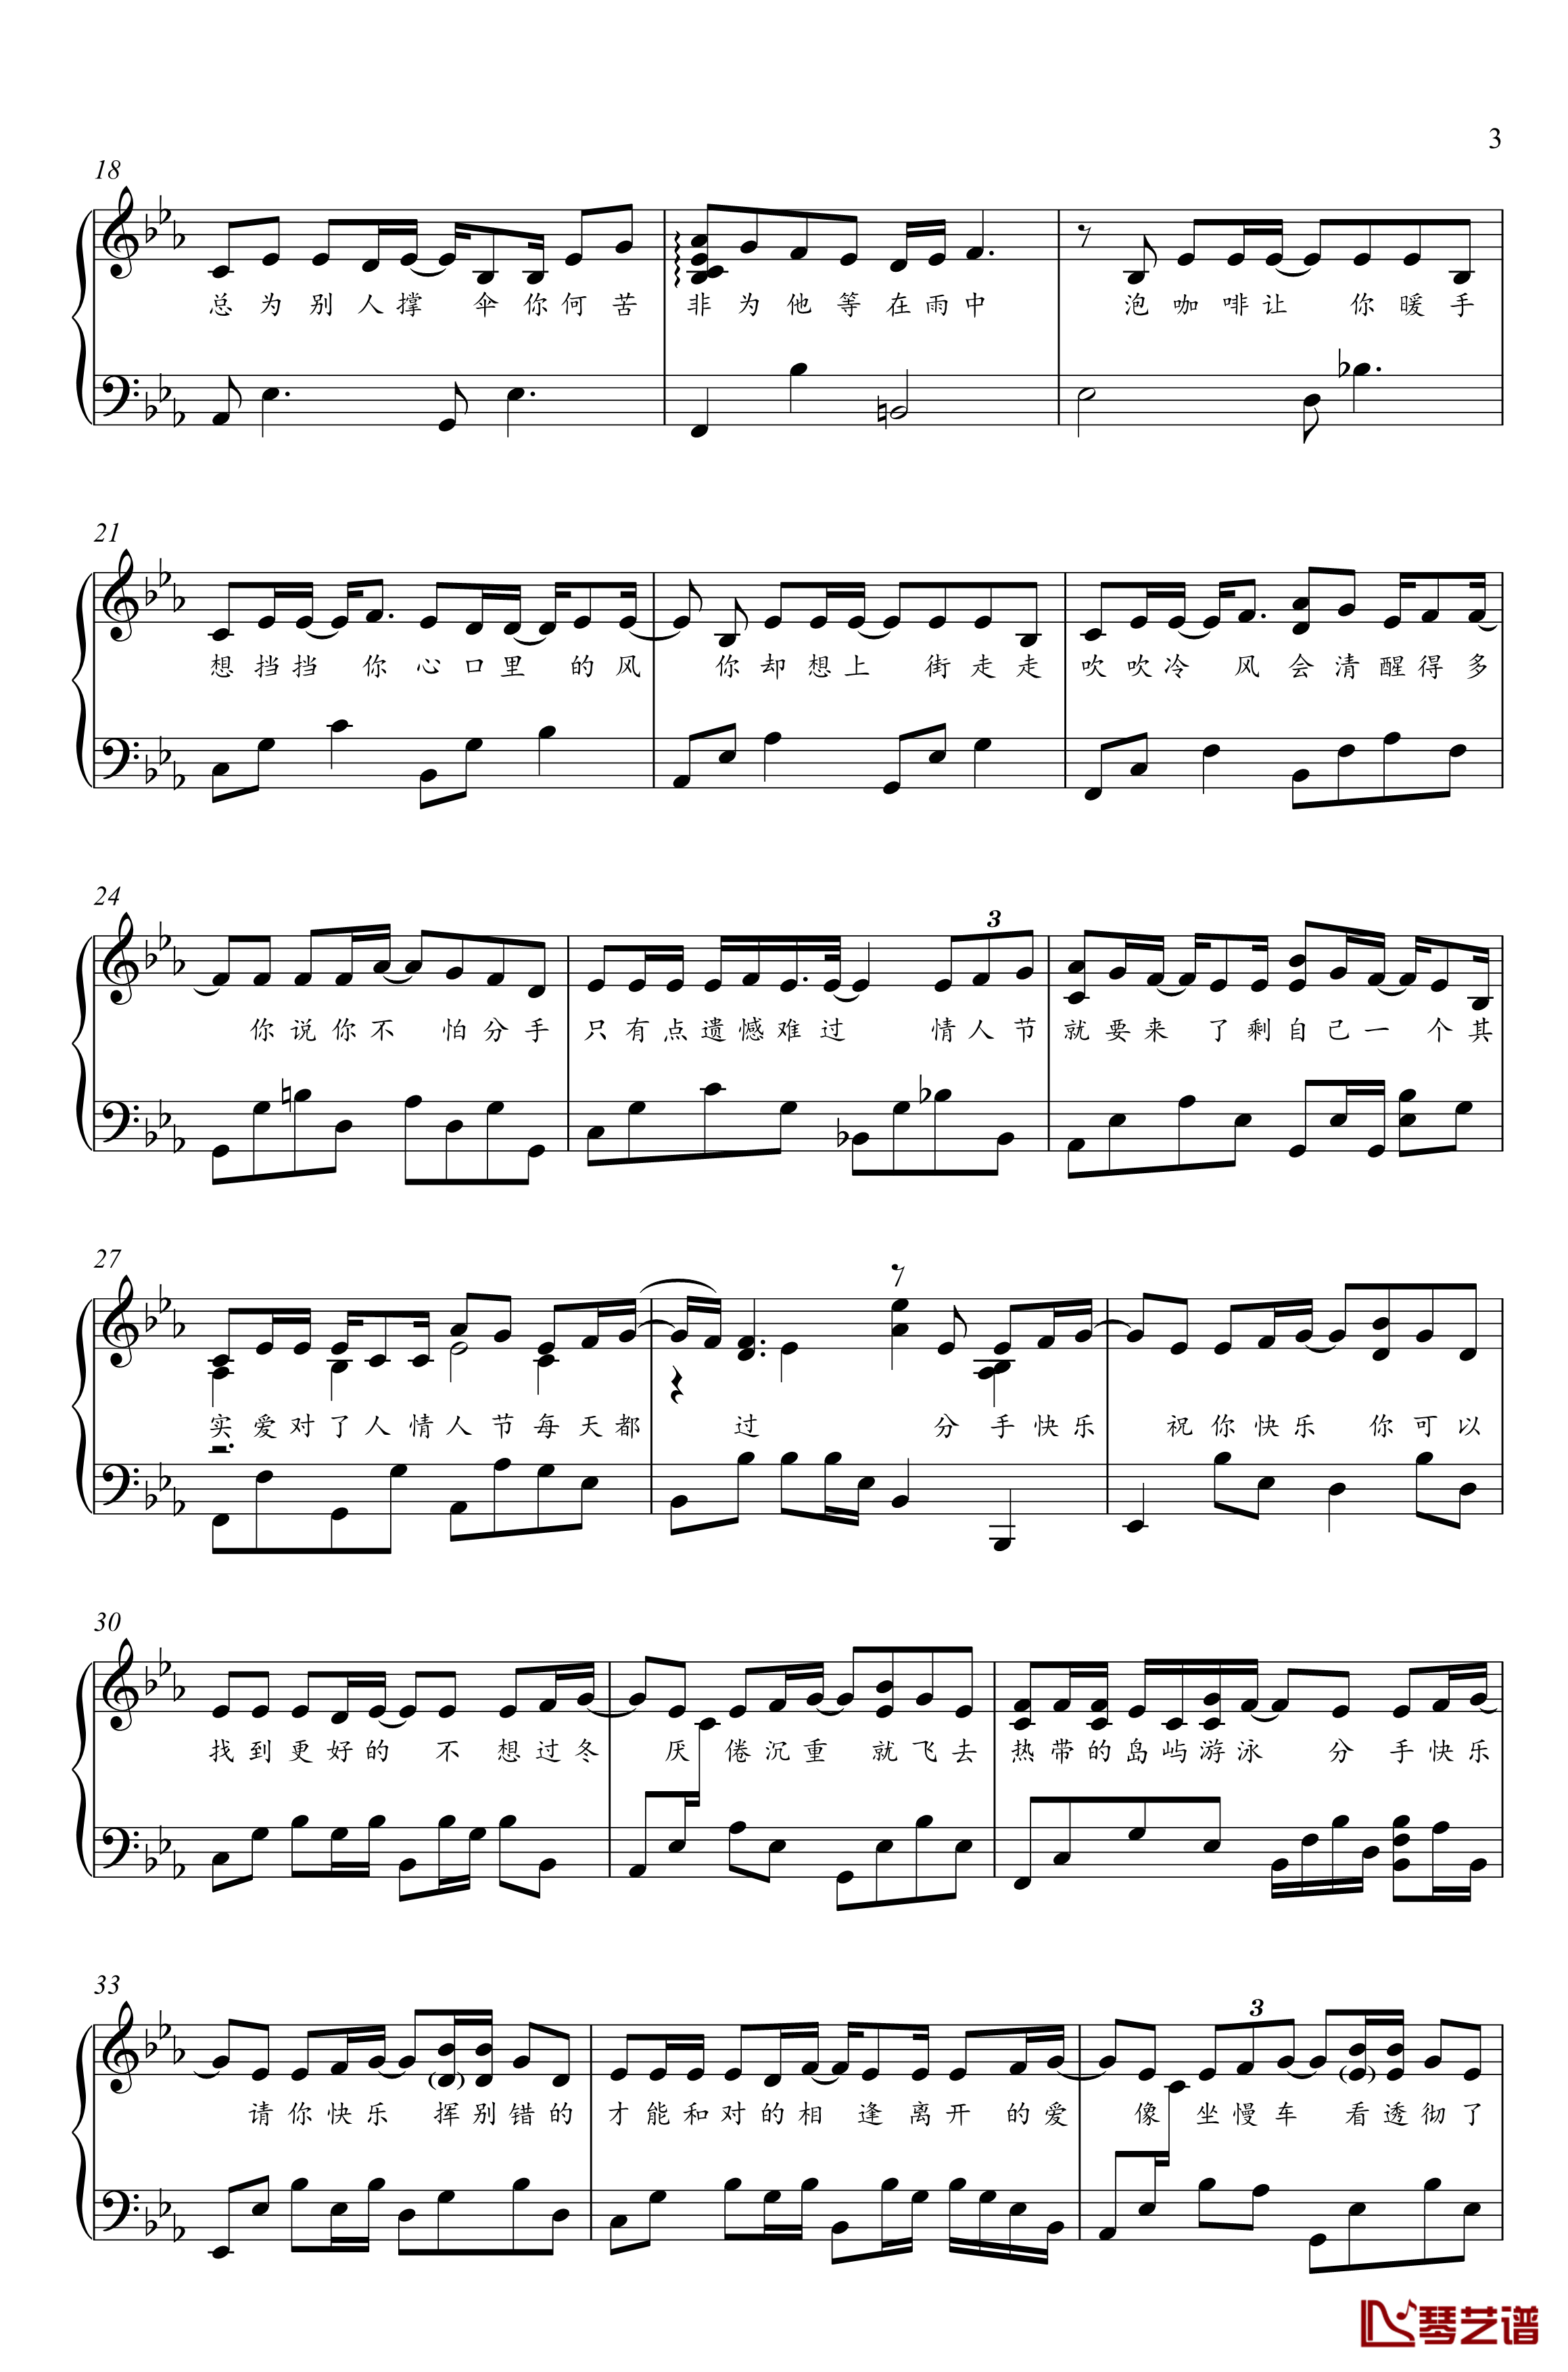 分手快乐钢琴谱-梁静茹-金老师钢琴独奏谱1910313